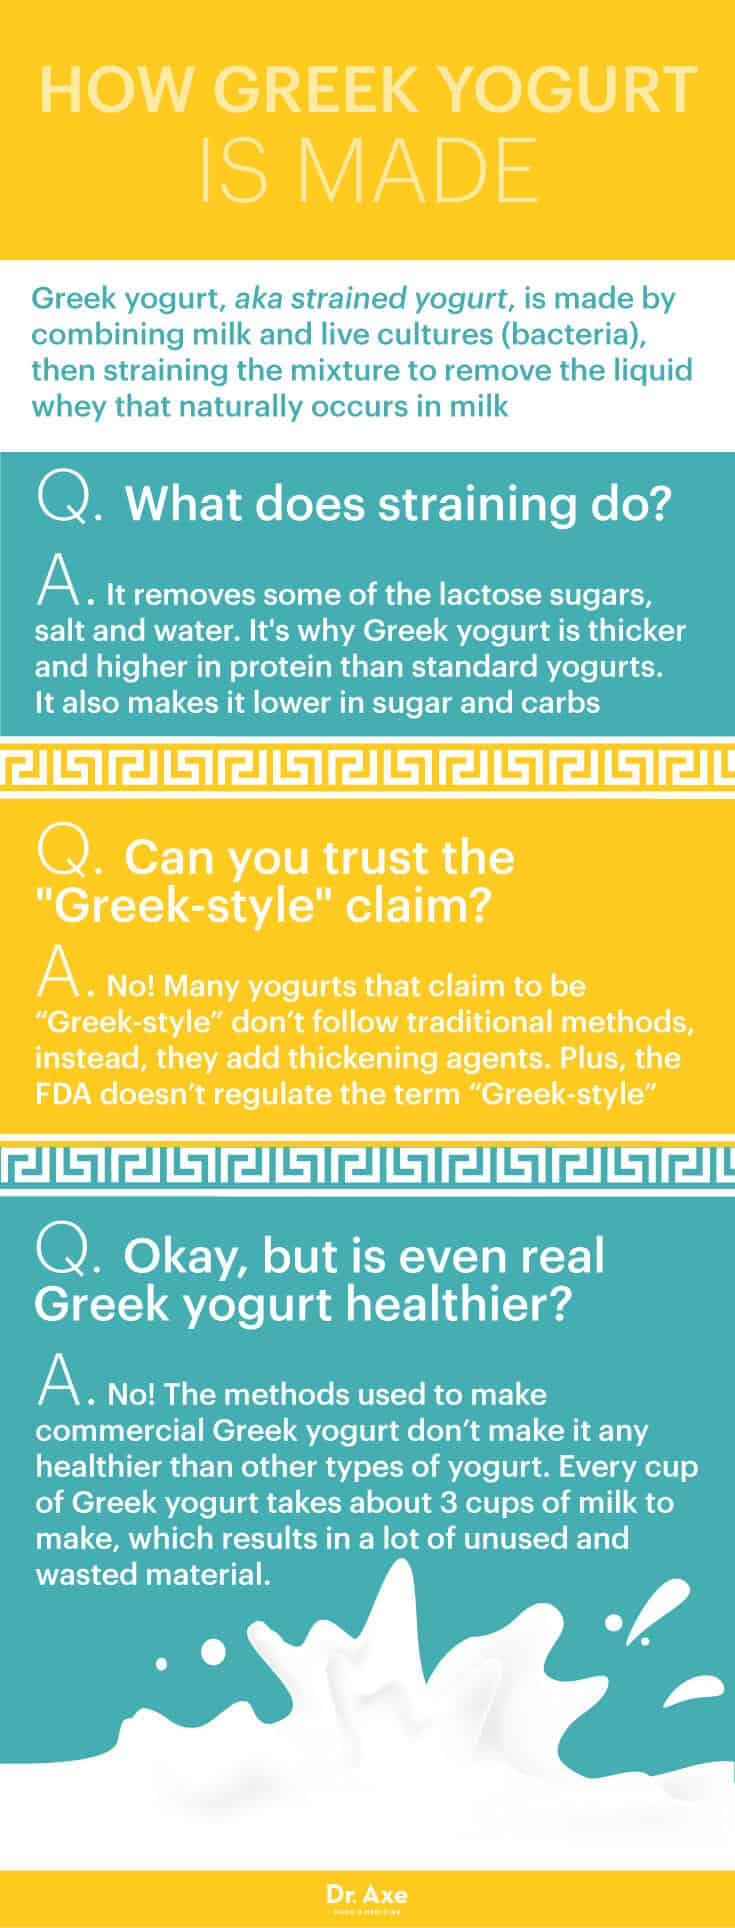 Greek Yogurt - Dr. Axe